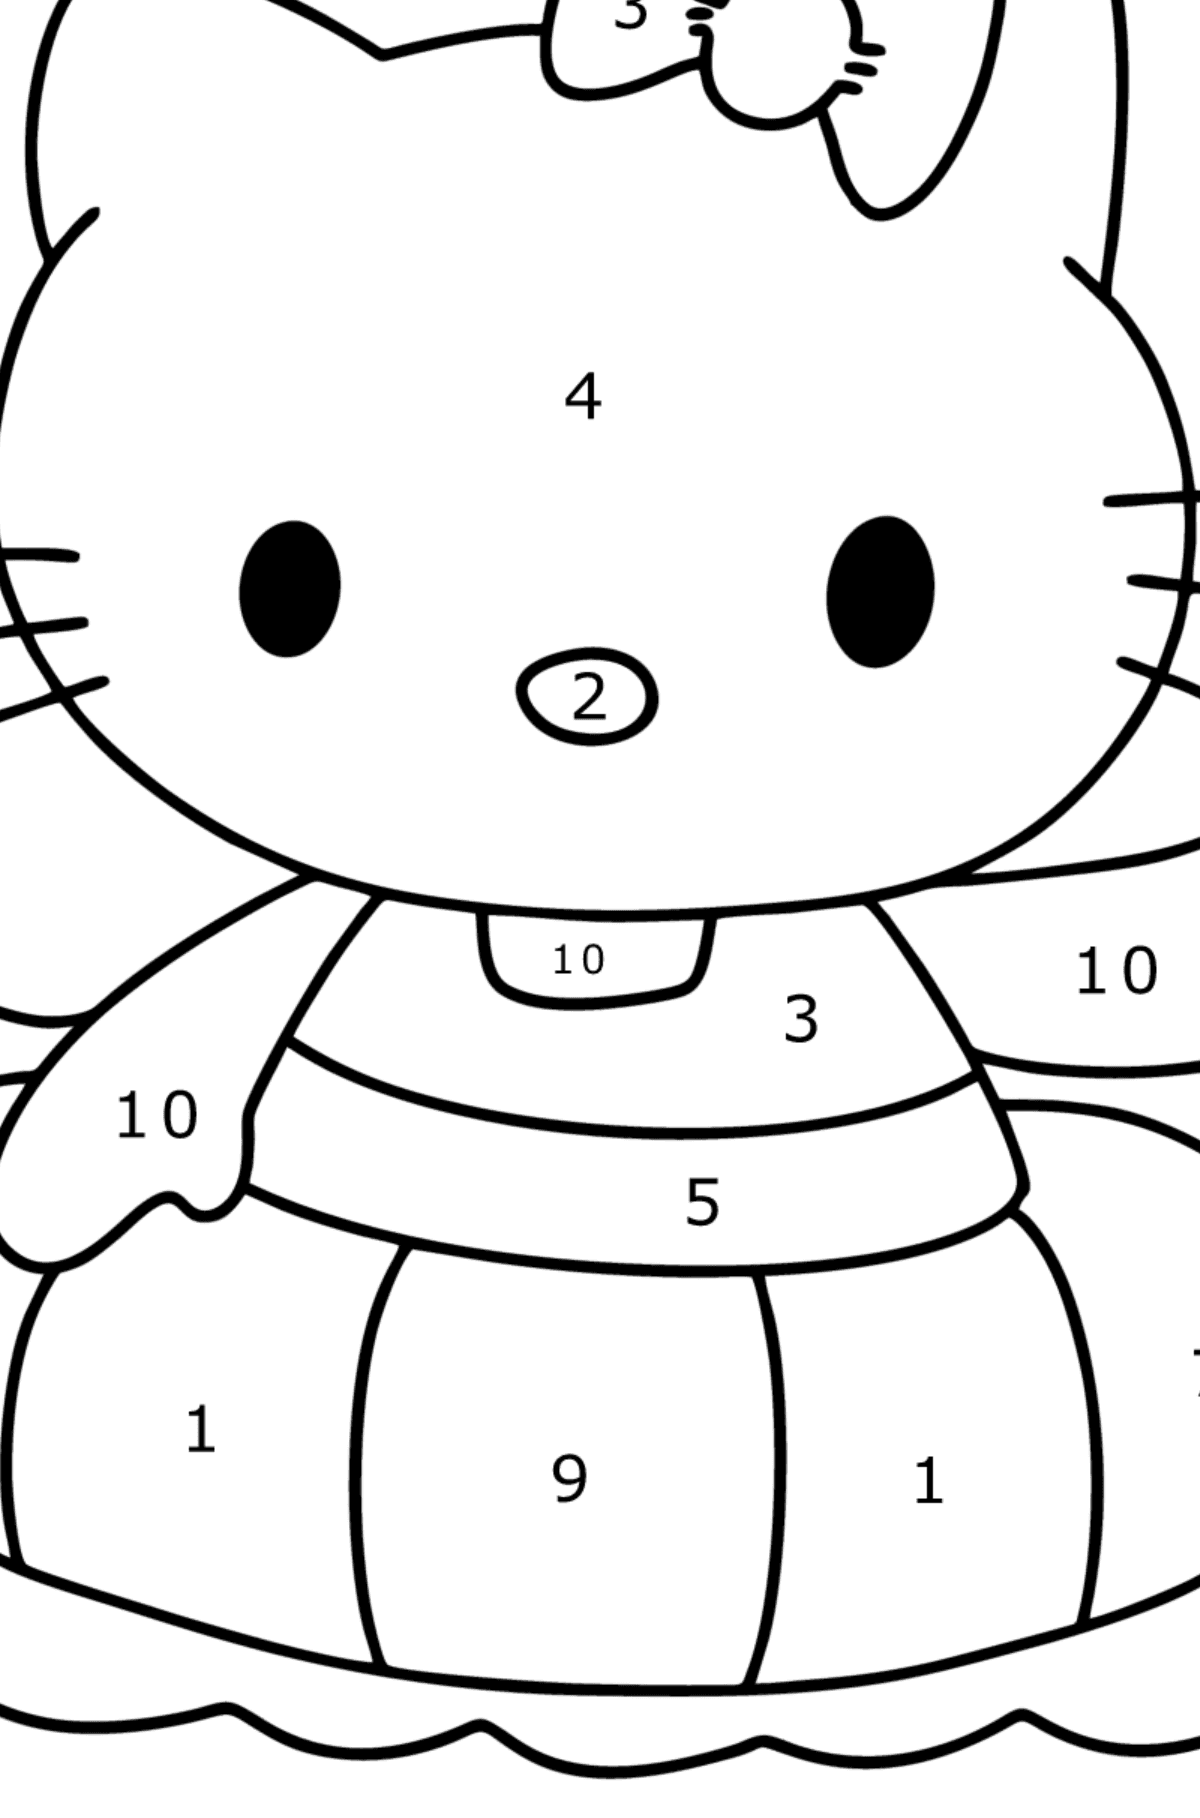 Boyama sayfası Hello Kitty yüzer - Sayılarla Boyama çocuklar için